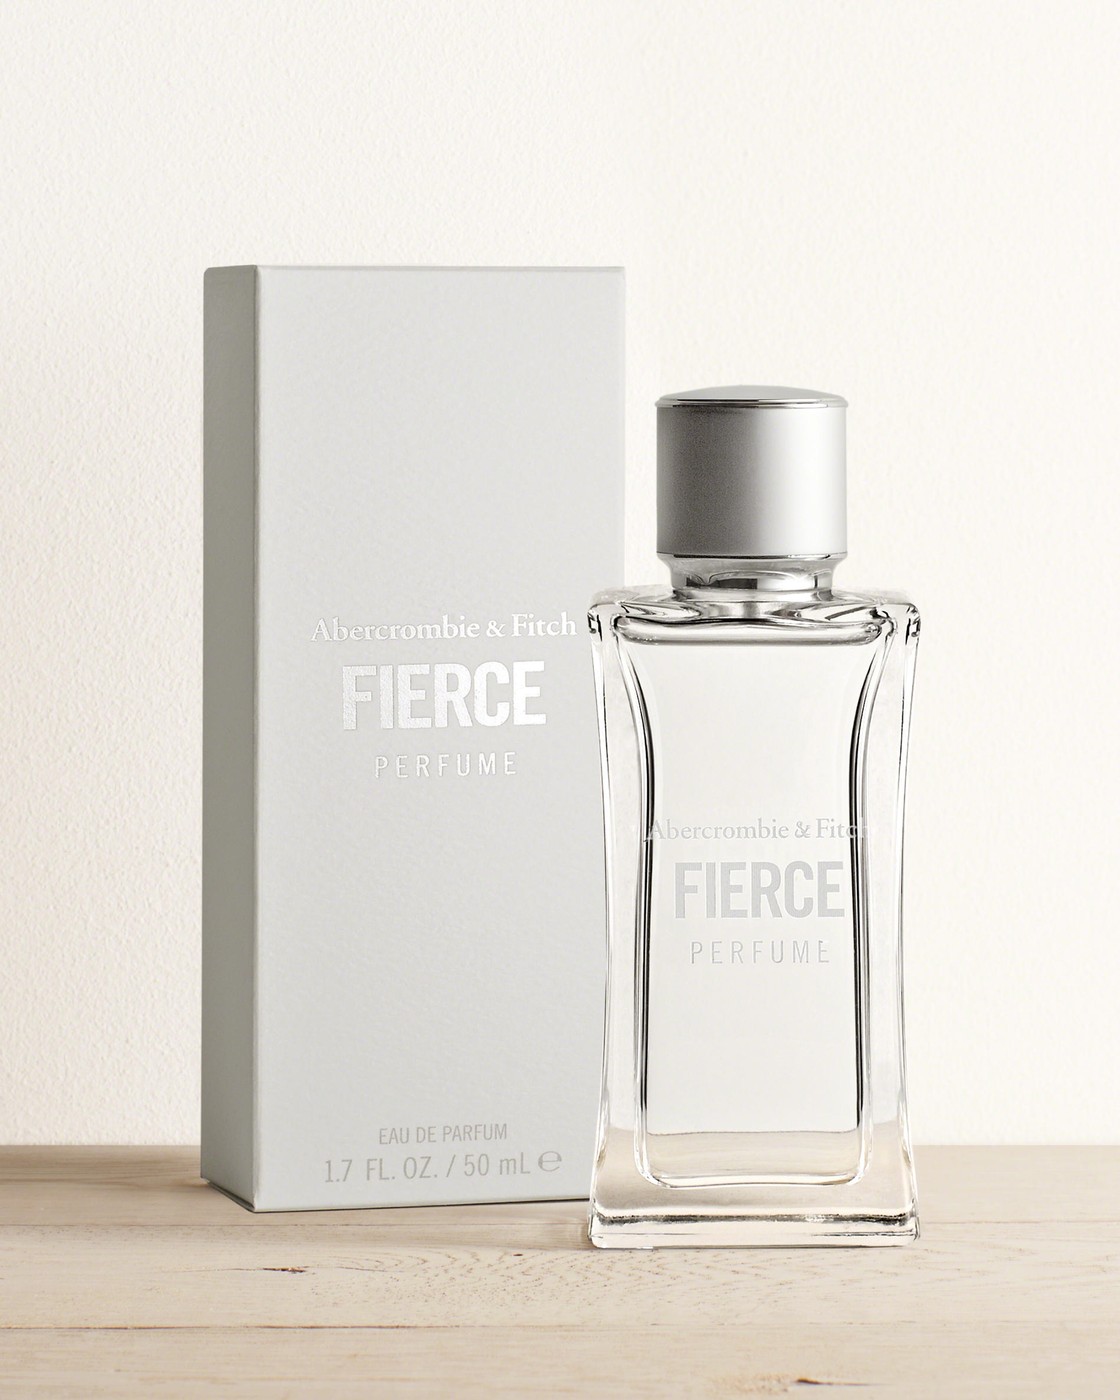 Парфюм Abercrombie & Fitch Fierce Perfume 50 мл, Один размер, Один размер